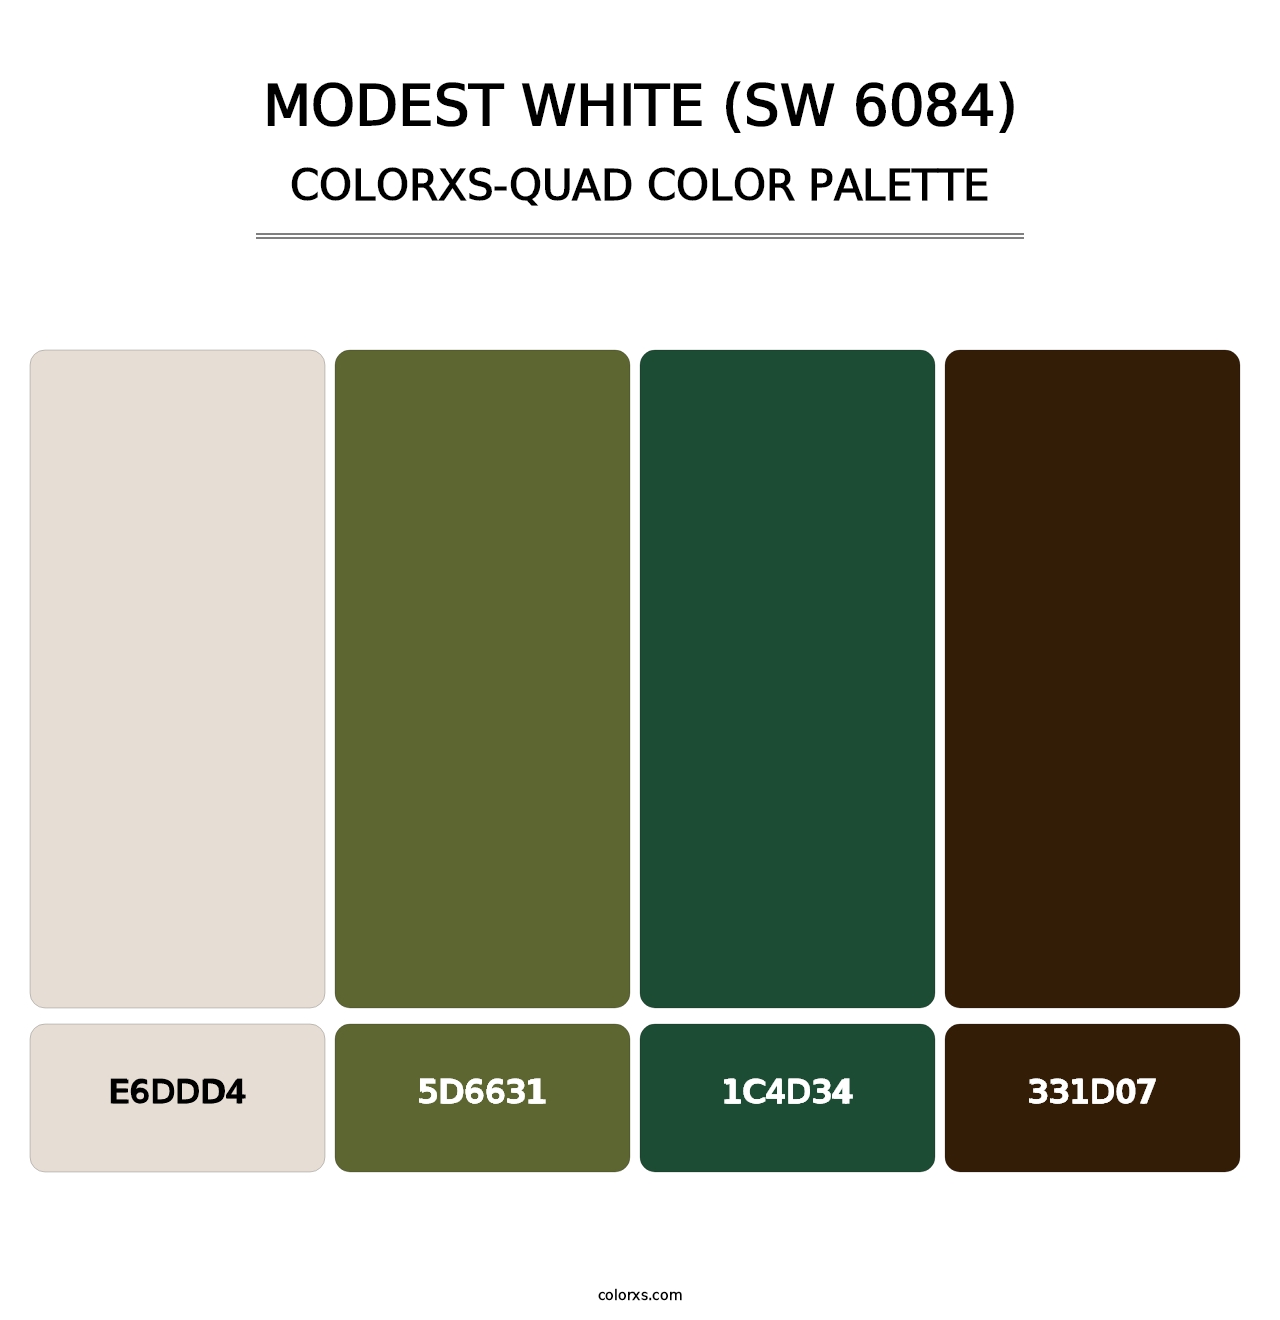 Modest White (SW 6084) - Colorxs Quad Palette